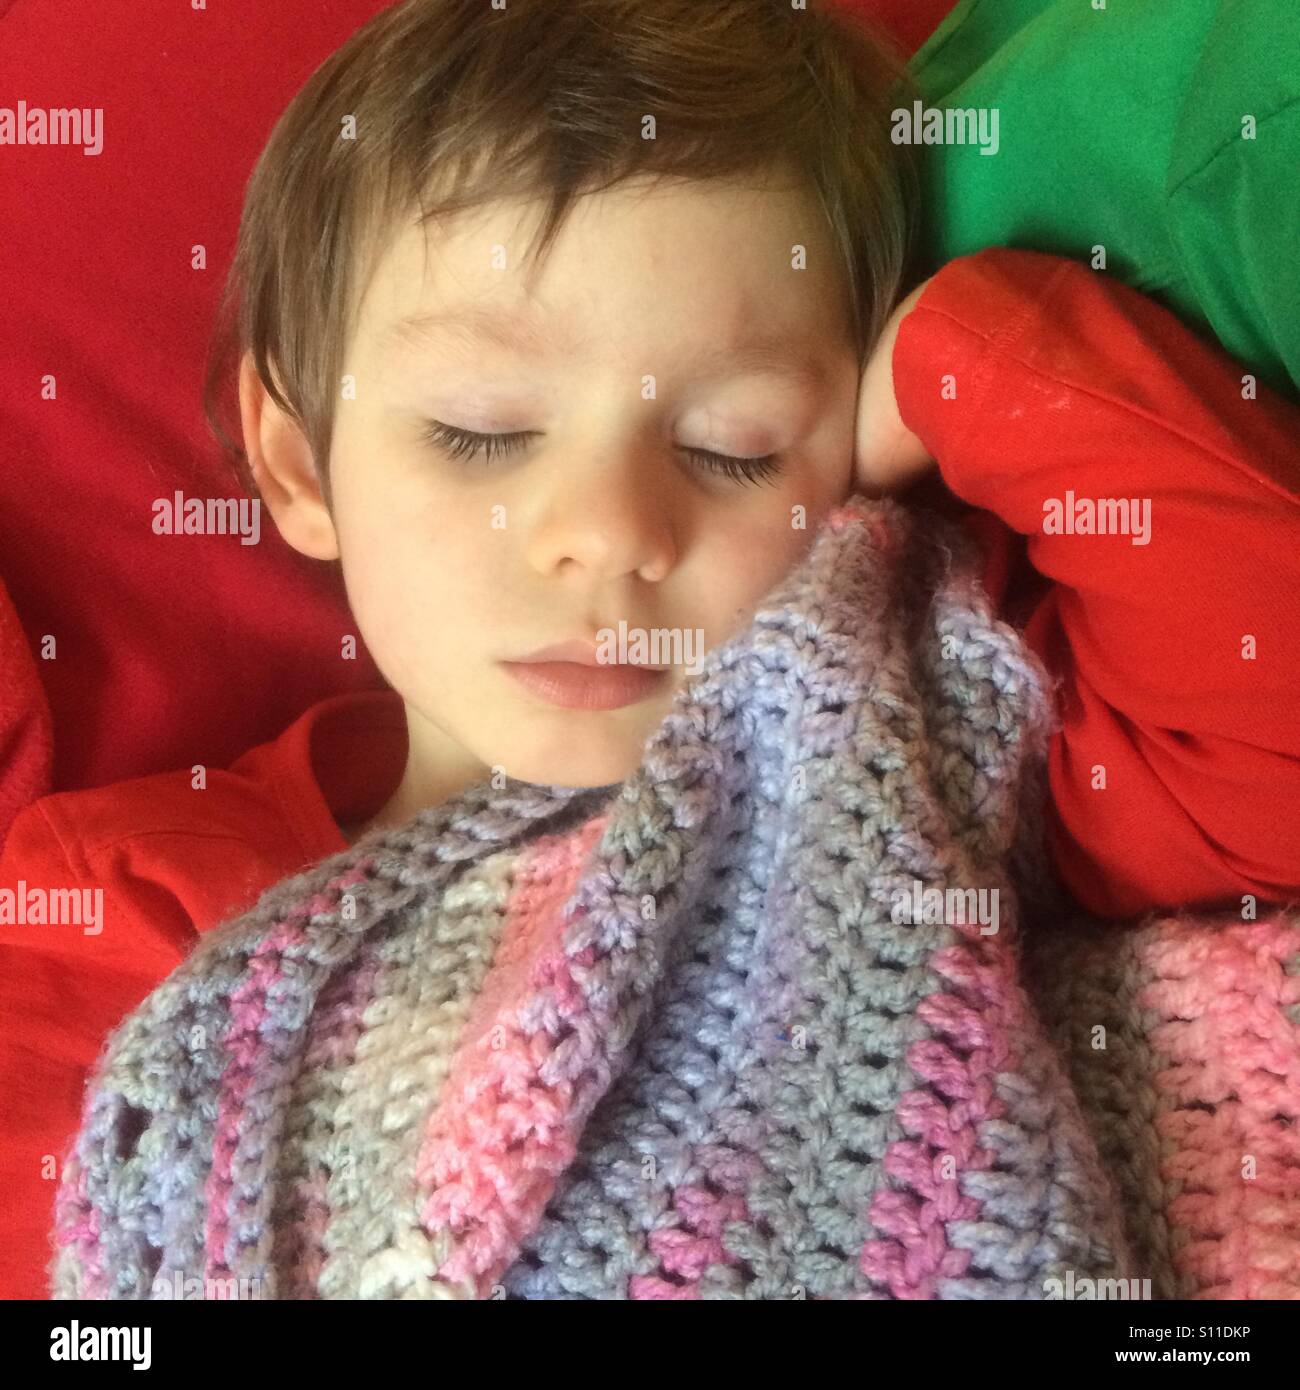 Jeune garçon enfant dormir paisiblement avec une couverture au crochet. Il porte un t-shirt rouge et prend sa sieste sur un coussin rouge et vert. Il est blotti sur un crochet à la main. Banque D'Images